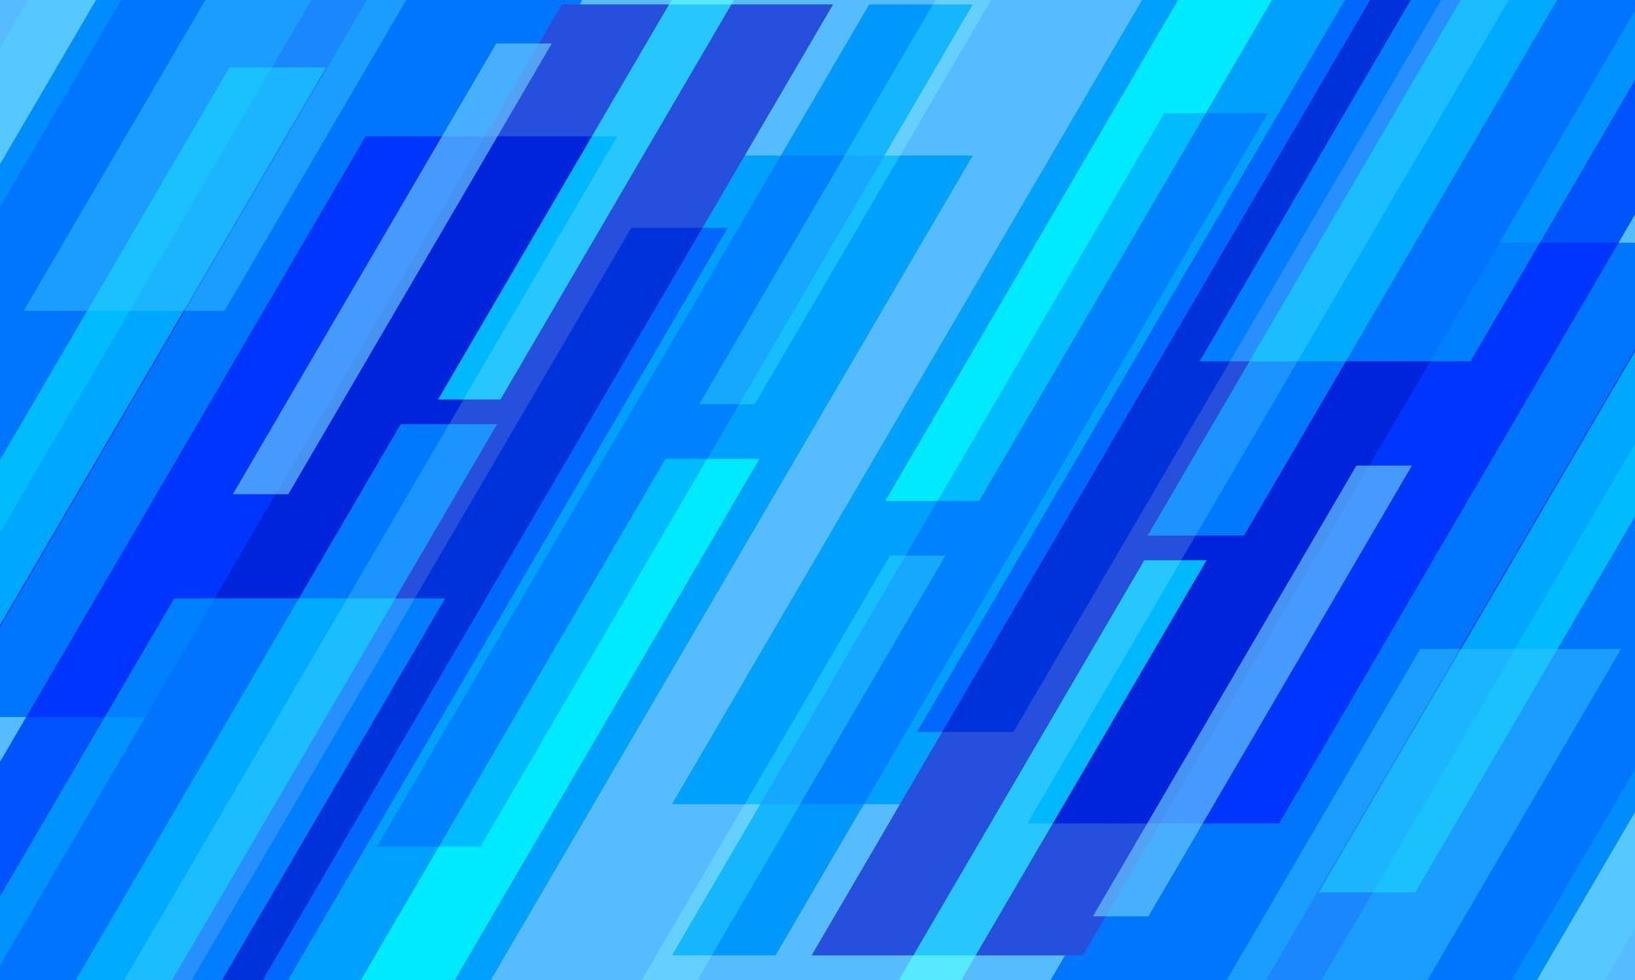 abstrait géométrique bleu. design moderne avec des rayures diagonales. fond bleu futuriste. vecteur de couverture, bannière, web